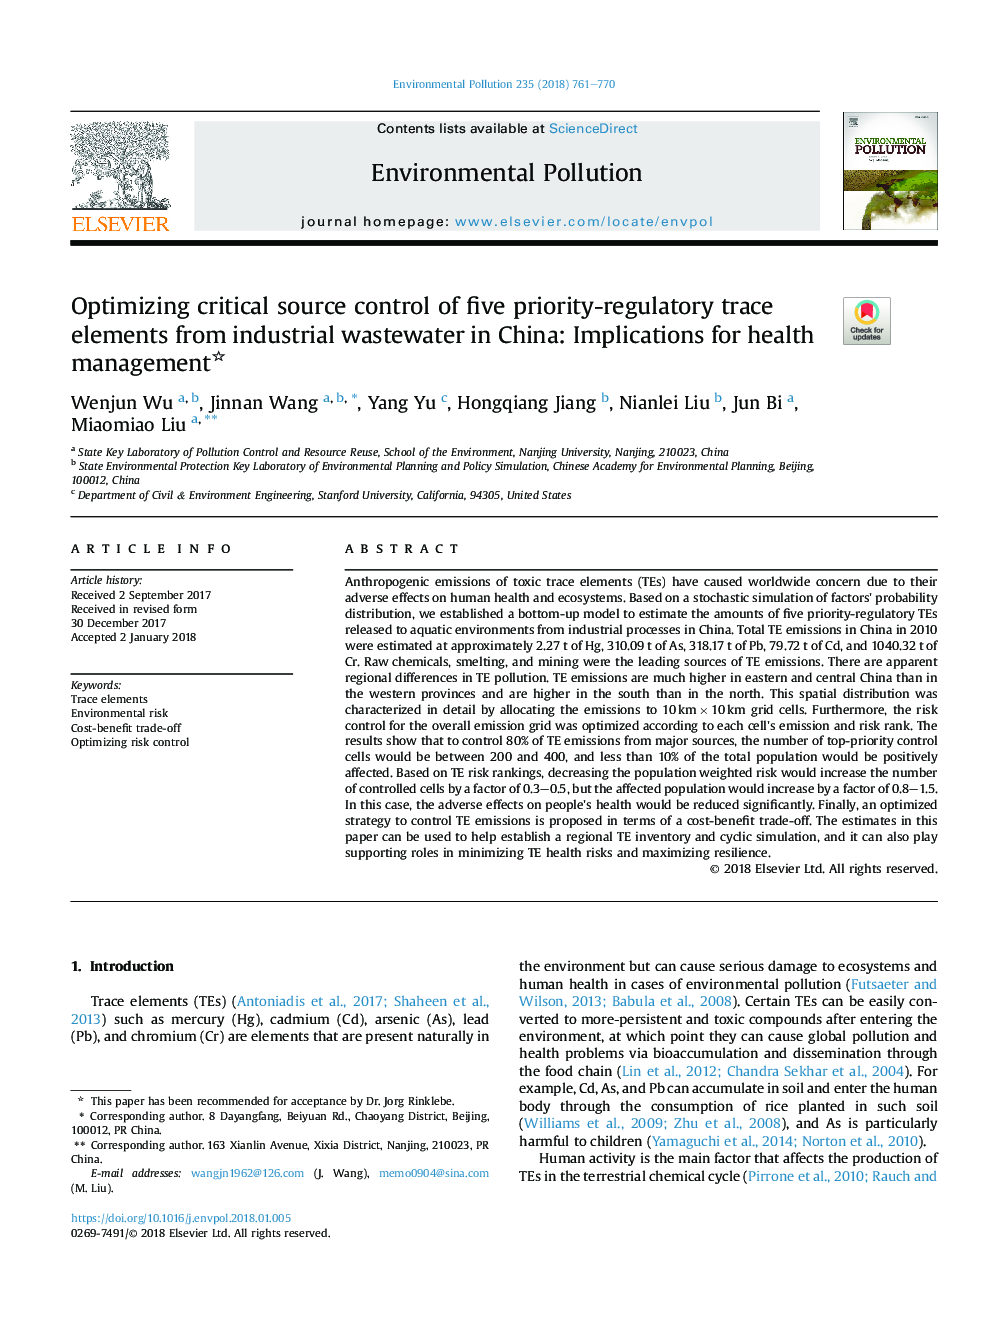 بهینه سازی کنترل منبع بحرانی از پنج عنصر ردیابی اولویت نظارتی از فاضلاب صنعتی در چین: پیامدهای مدیریت سلامت 